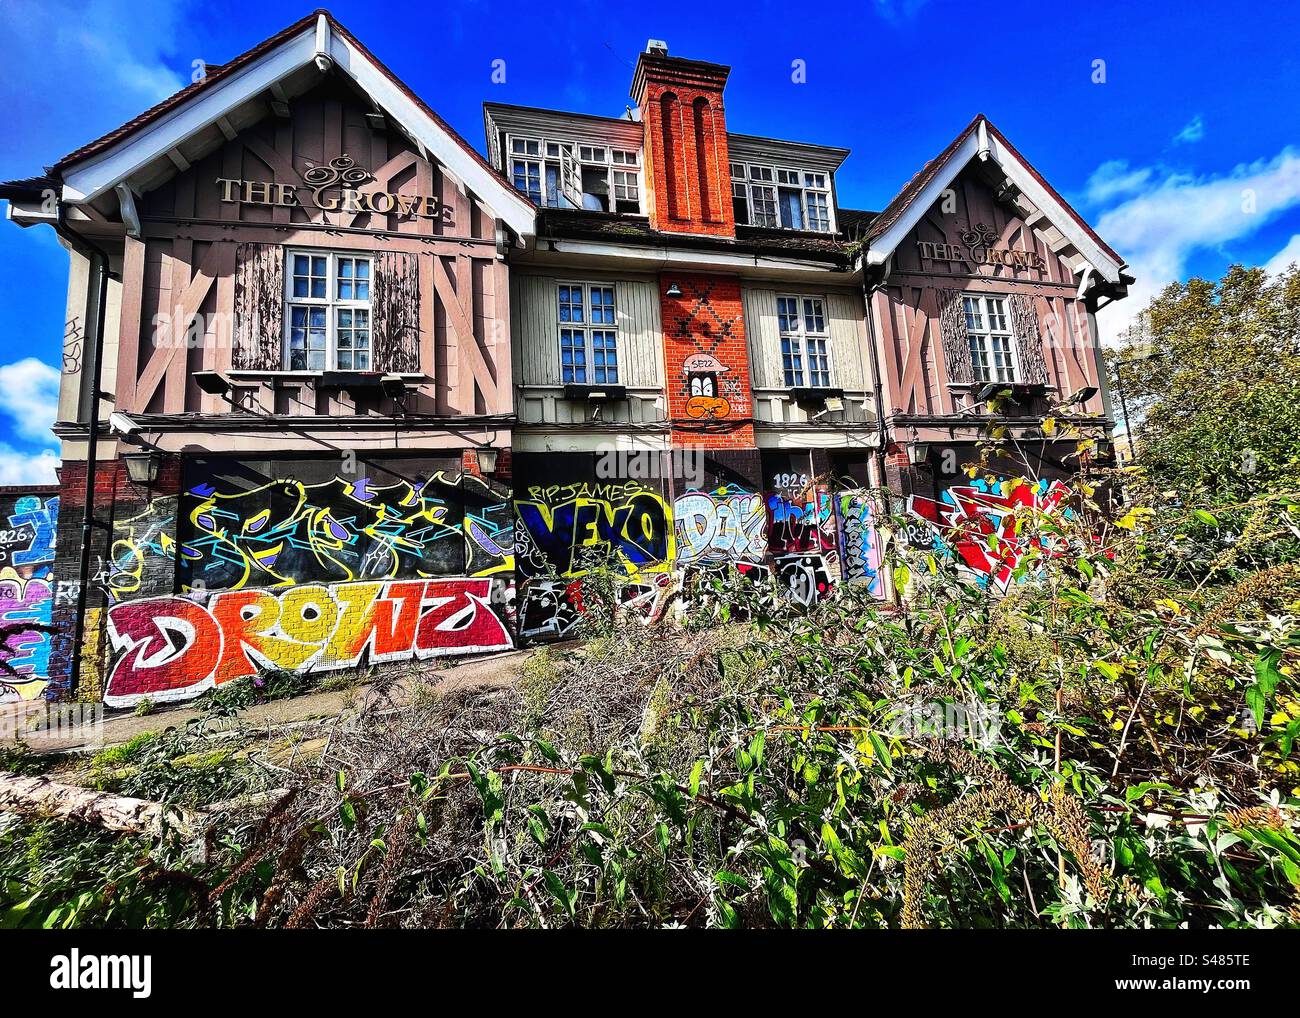 The Delict, Grove Tavern 520 Lordship Lane, East Dulwich, London SE22. Seit über 100 Jahren gibt es an diesem Standort einen Pub oder ein Publizisthaus. Das Gebäude ist umgeben von Graffiti und Unkraut Stockfoto